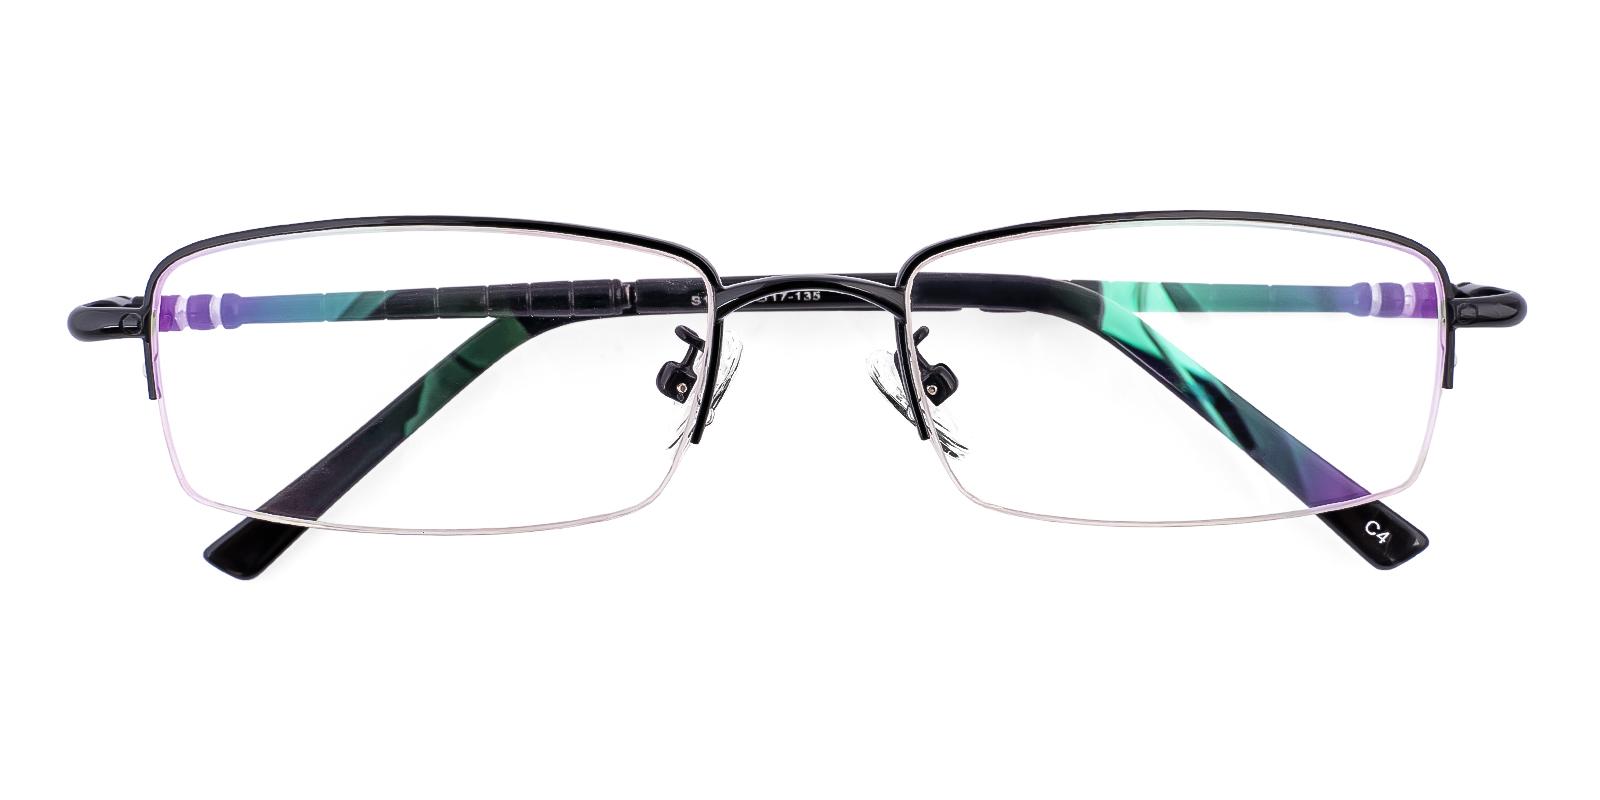 Mellior Black Metal Eyeglasses , NosePads , SpringHinges Frames from ABBE Glasses